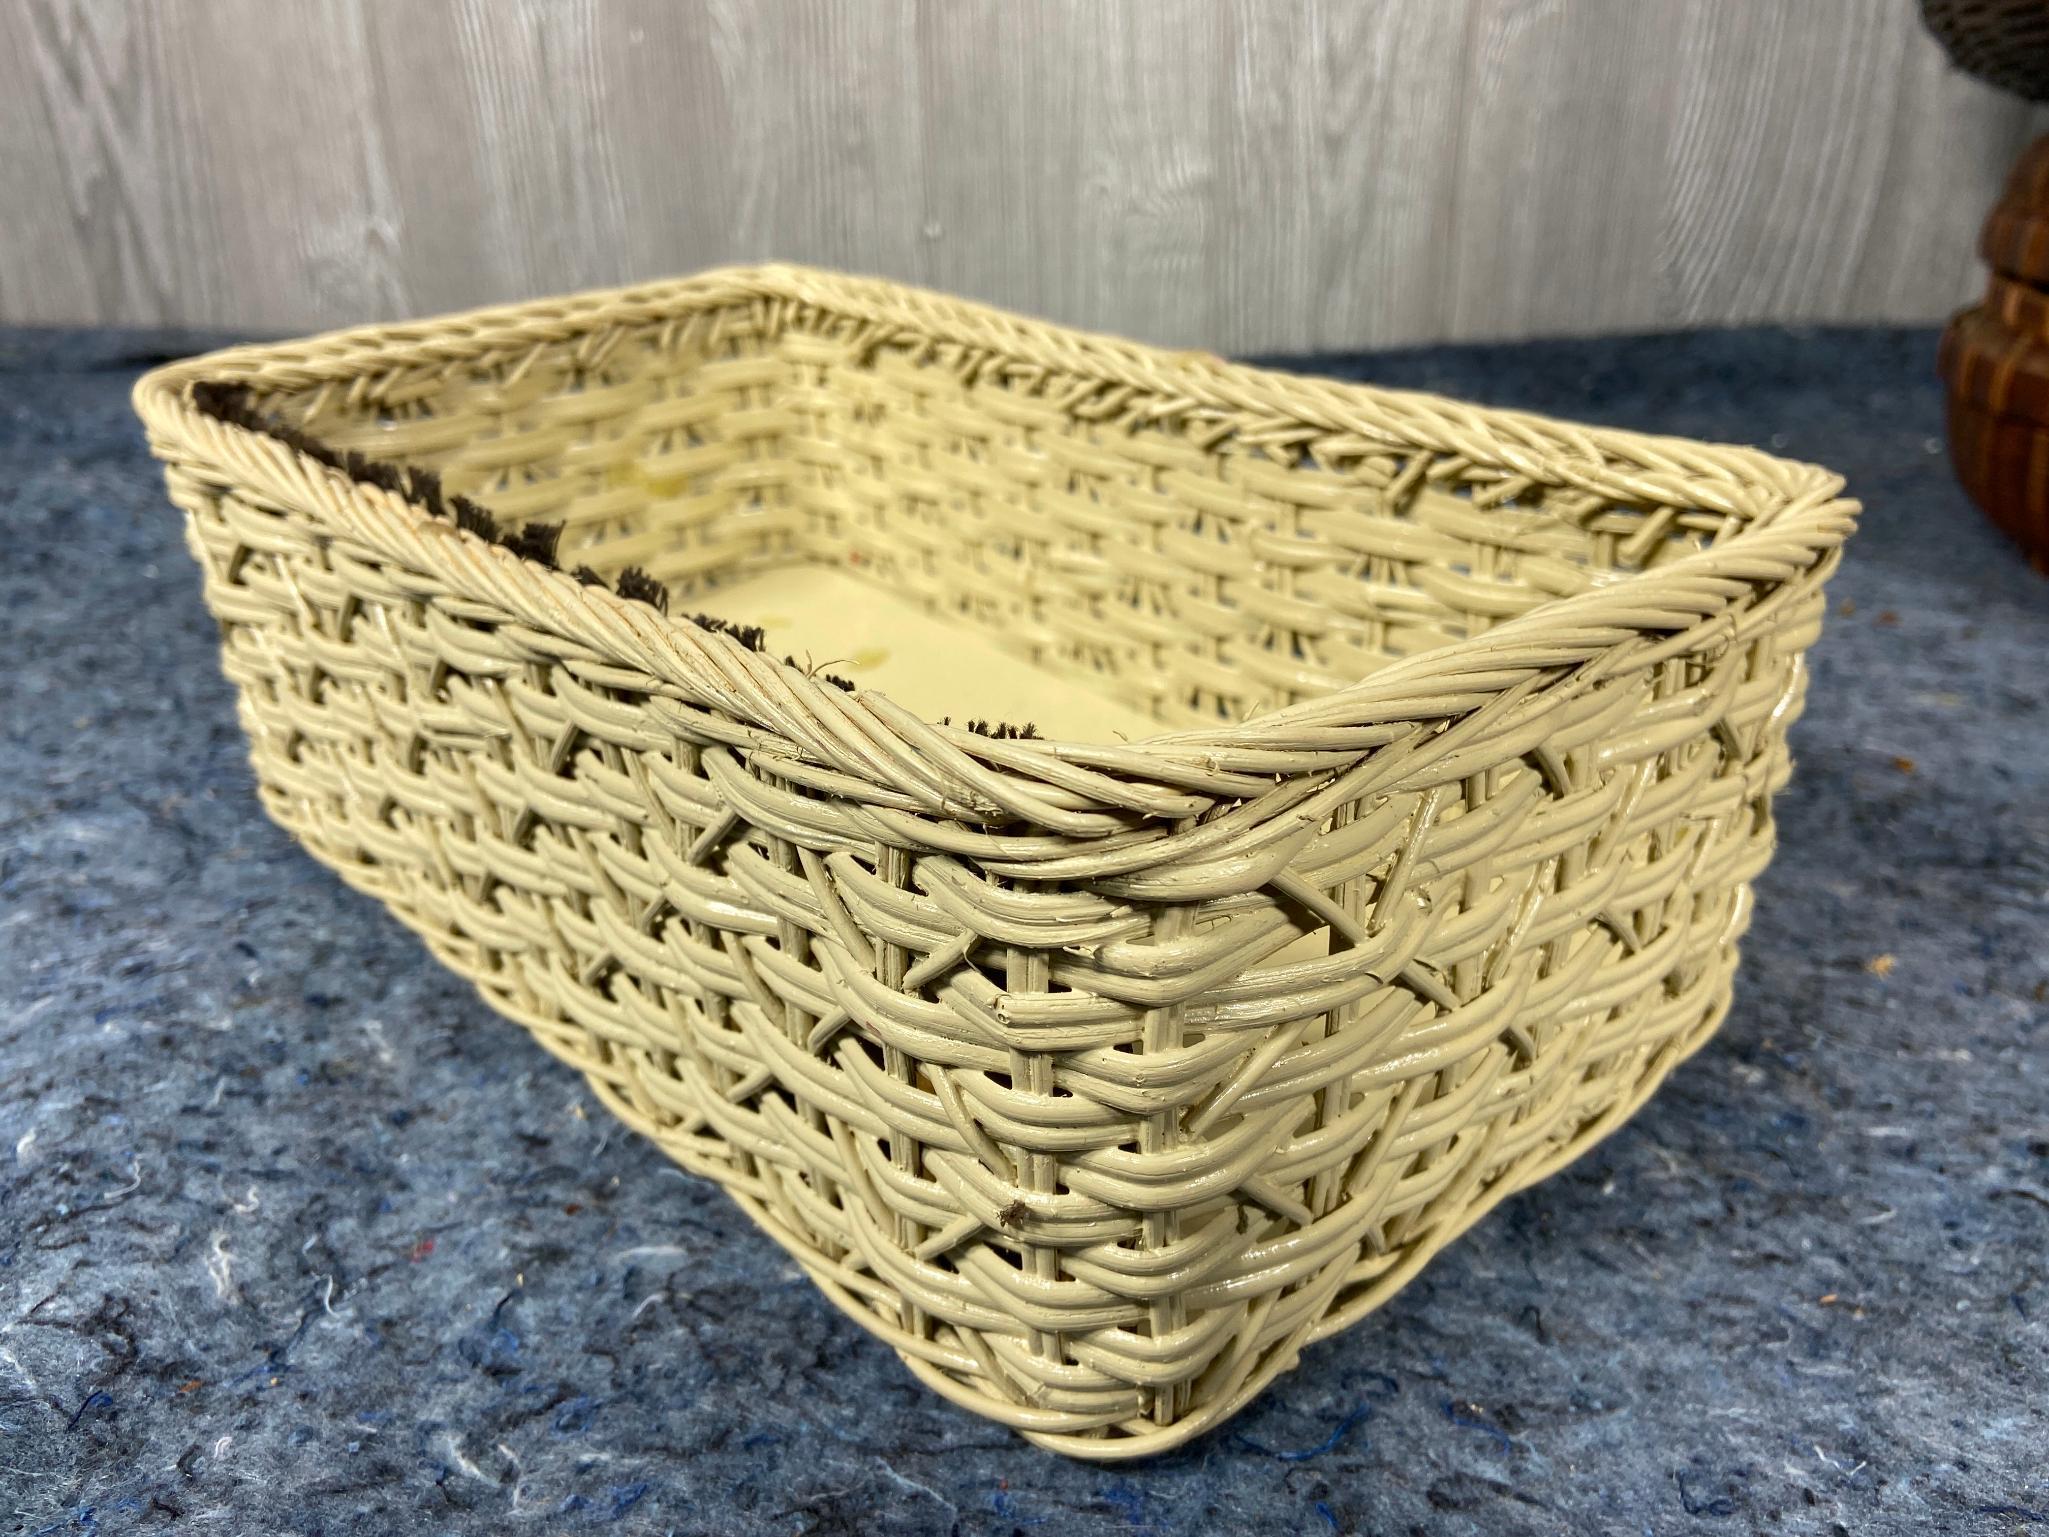 9 Vintage Wicker Baskets